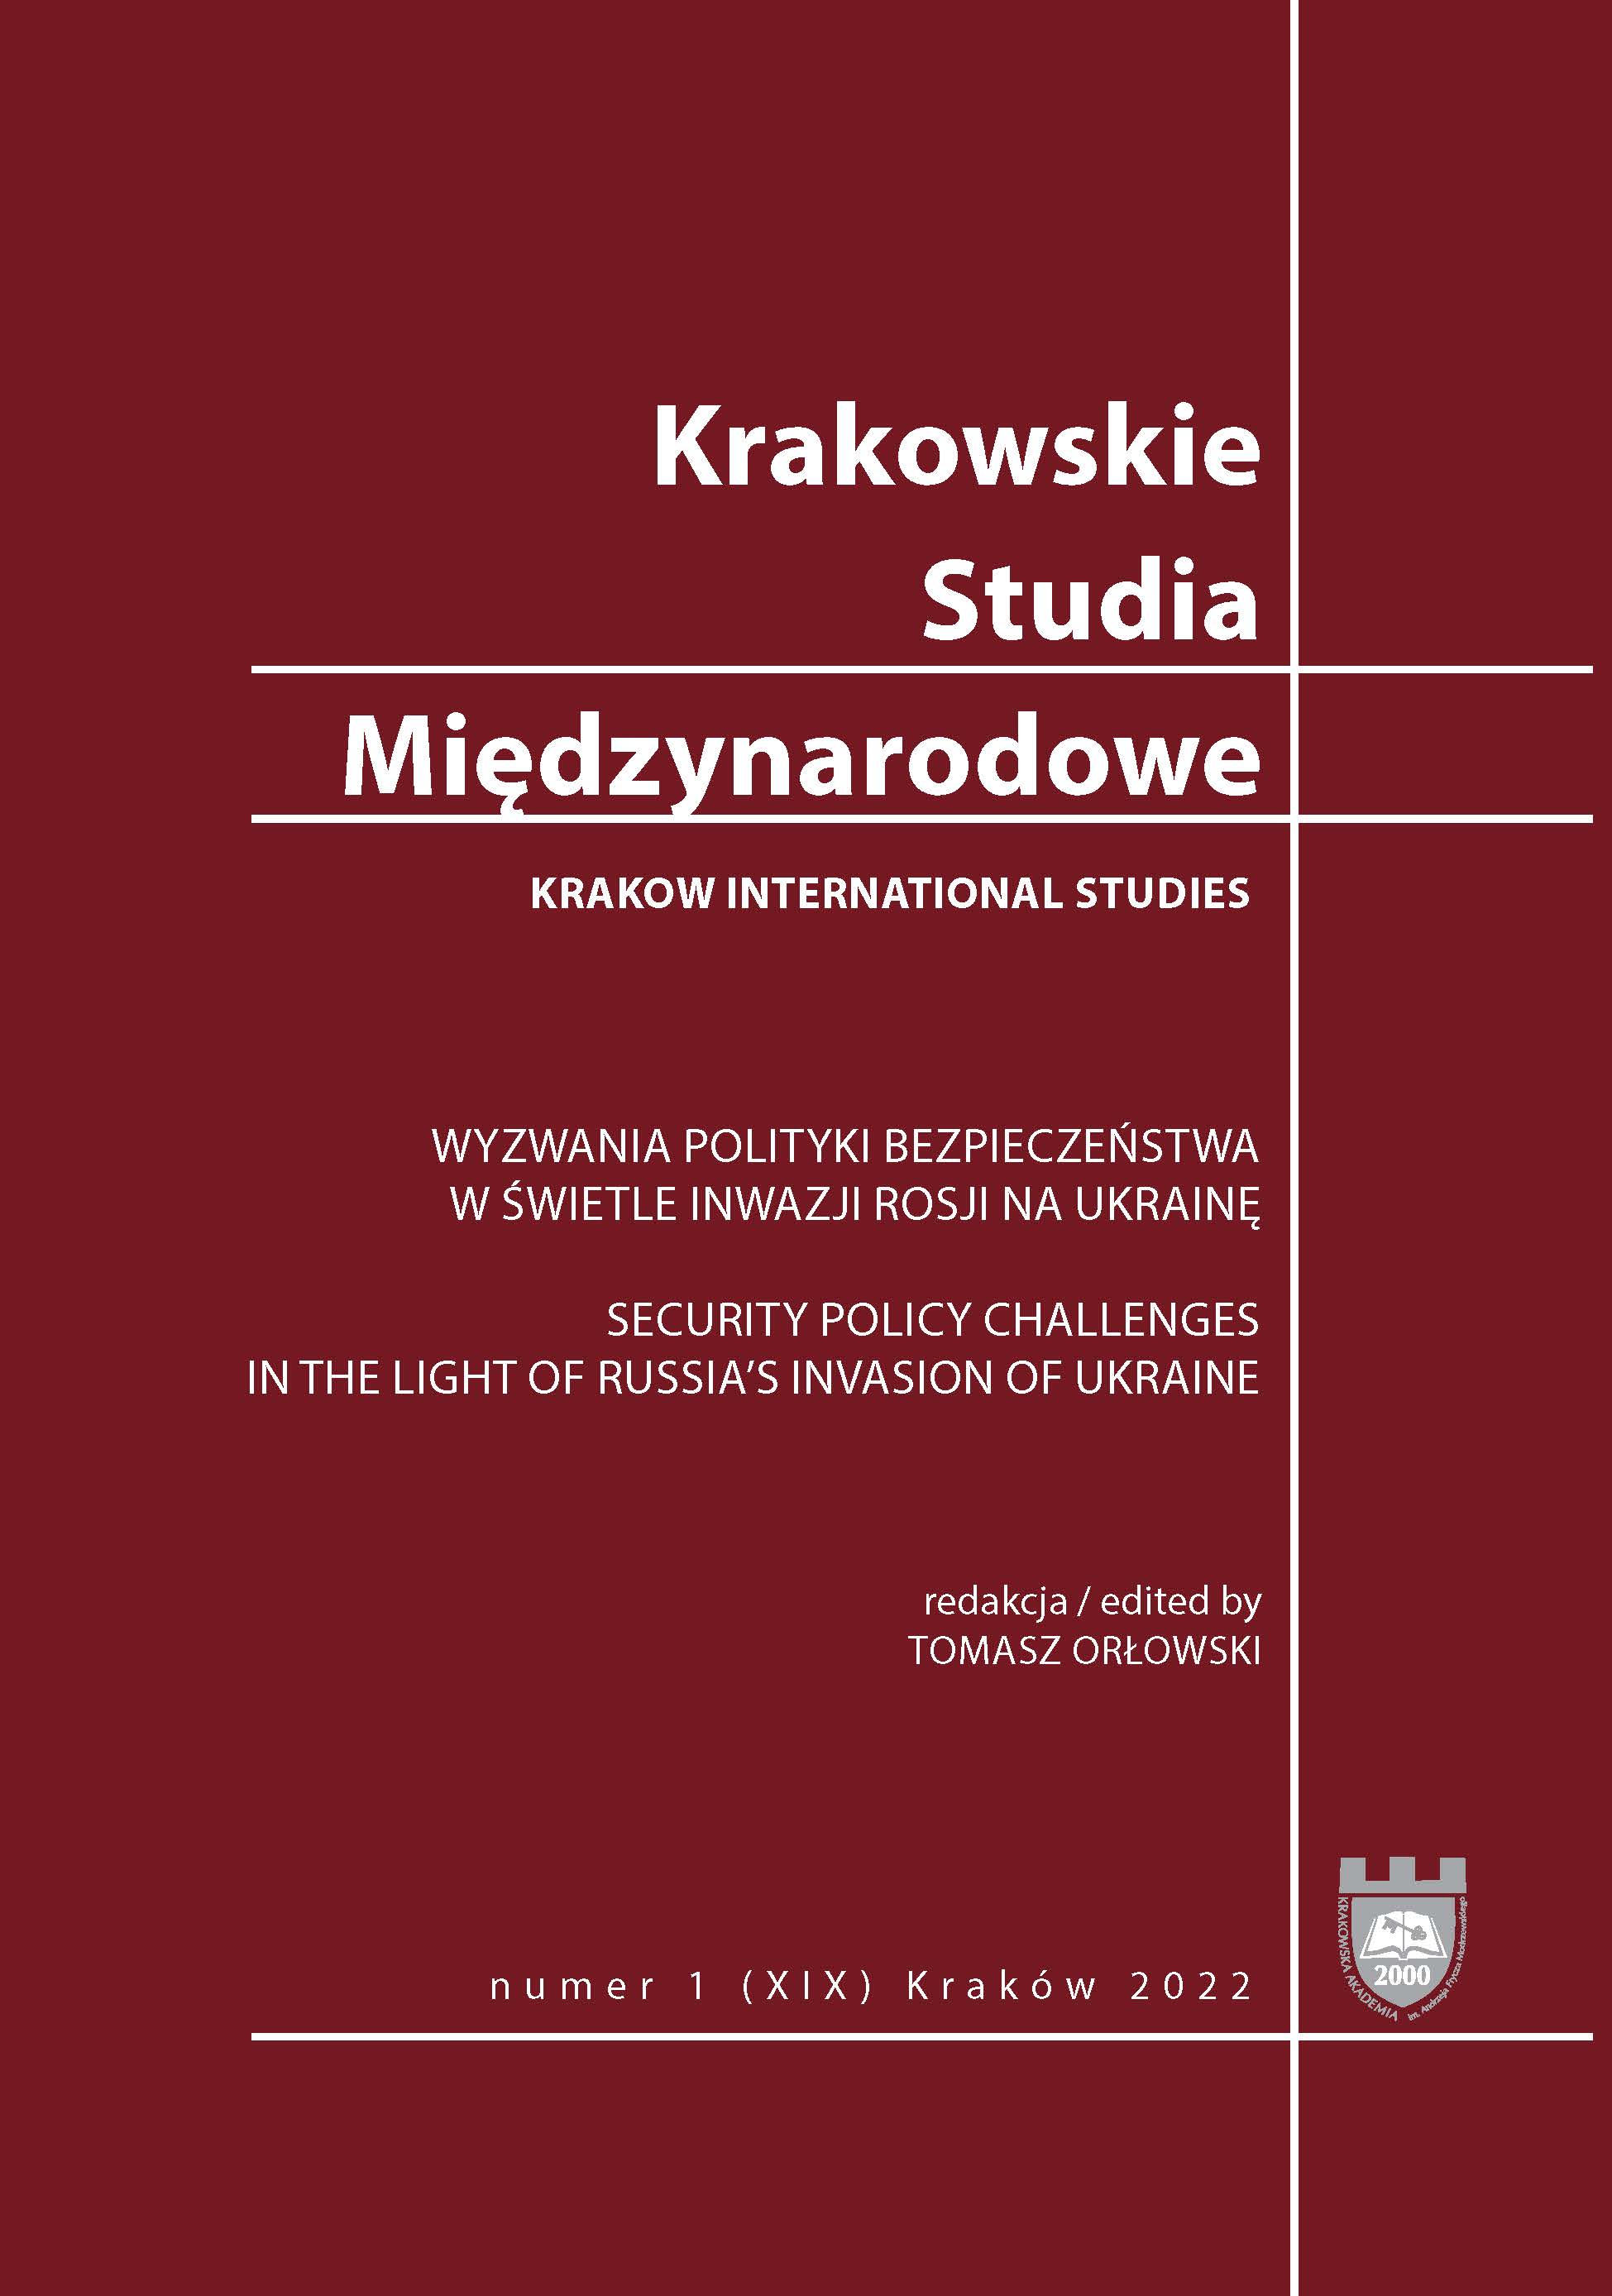 La crise ukrainienne et le rôle futur de la Pologne en Europe